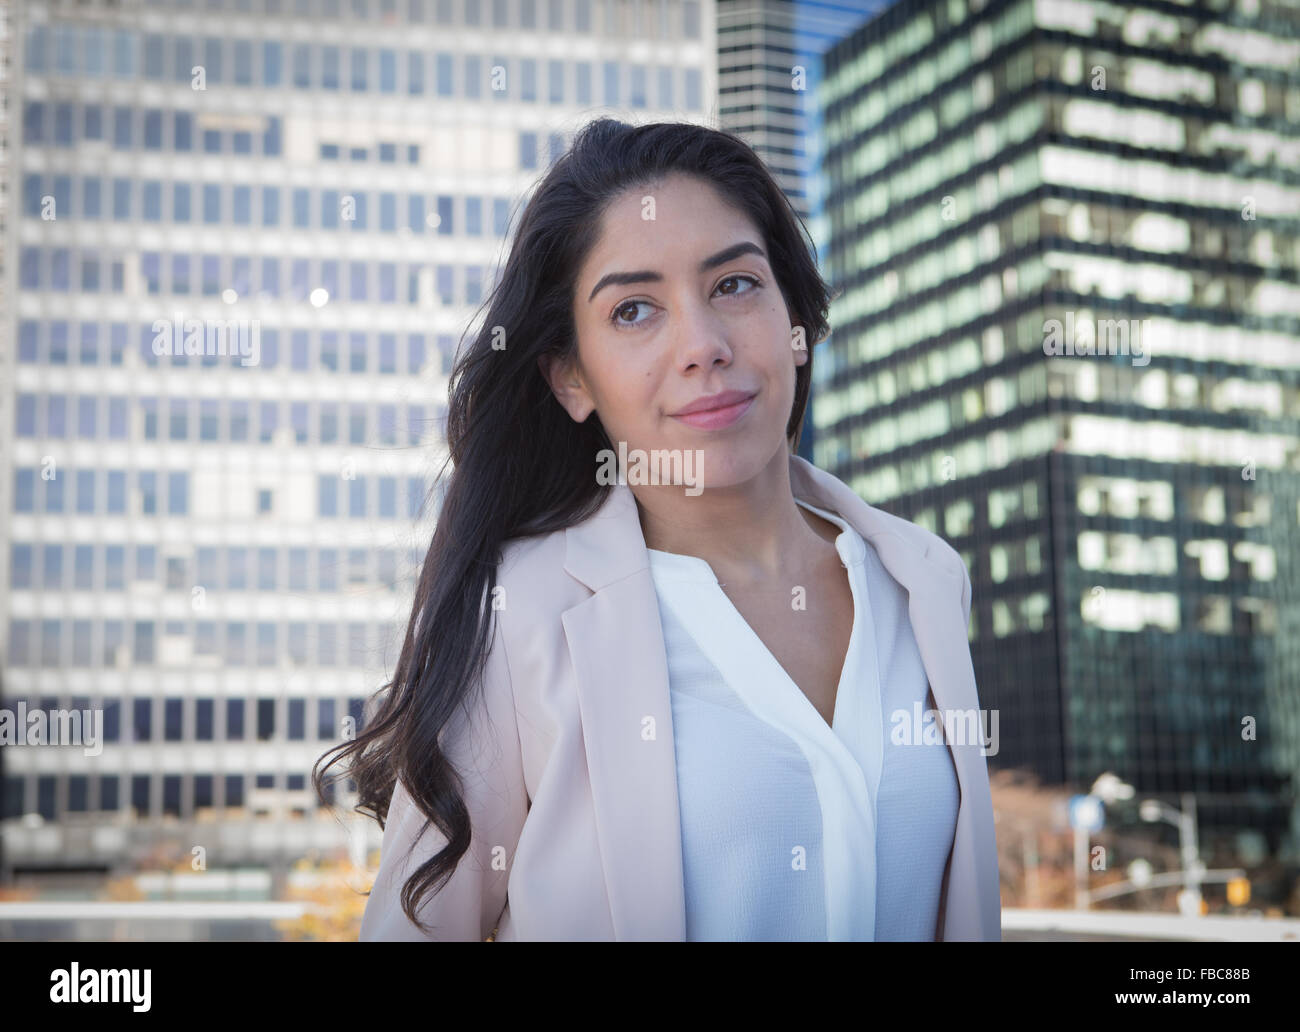 Jeune femme professionnelle de l'Amérique latine dans la ville. Photographié dans la ville de New York en novembre 2015 Banque D'Images